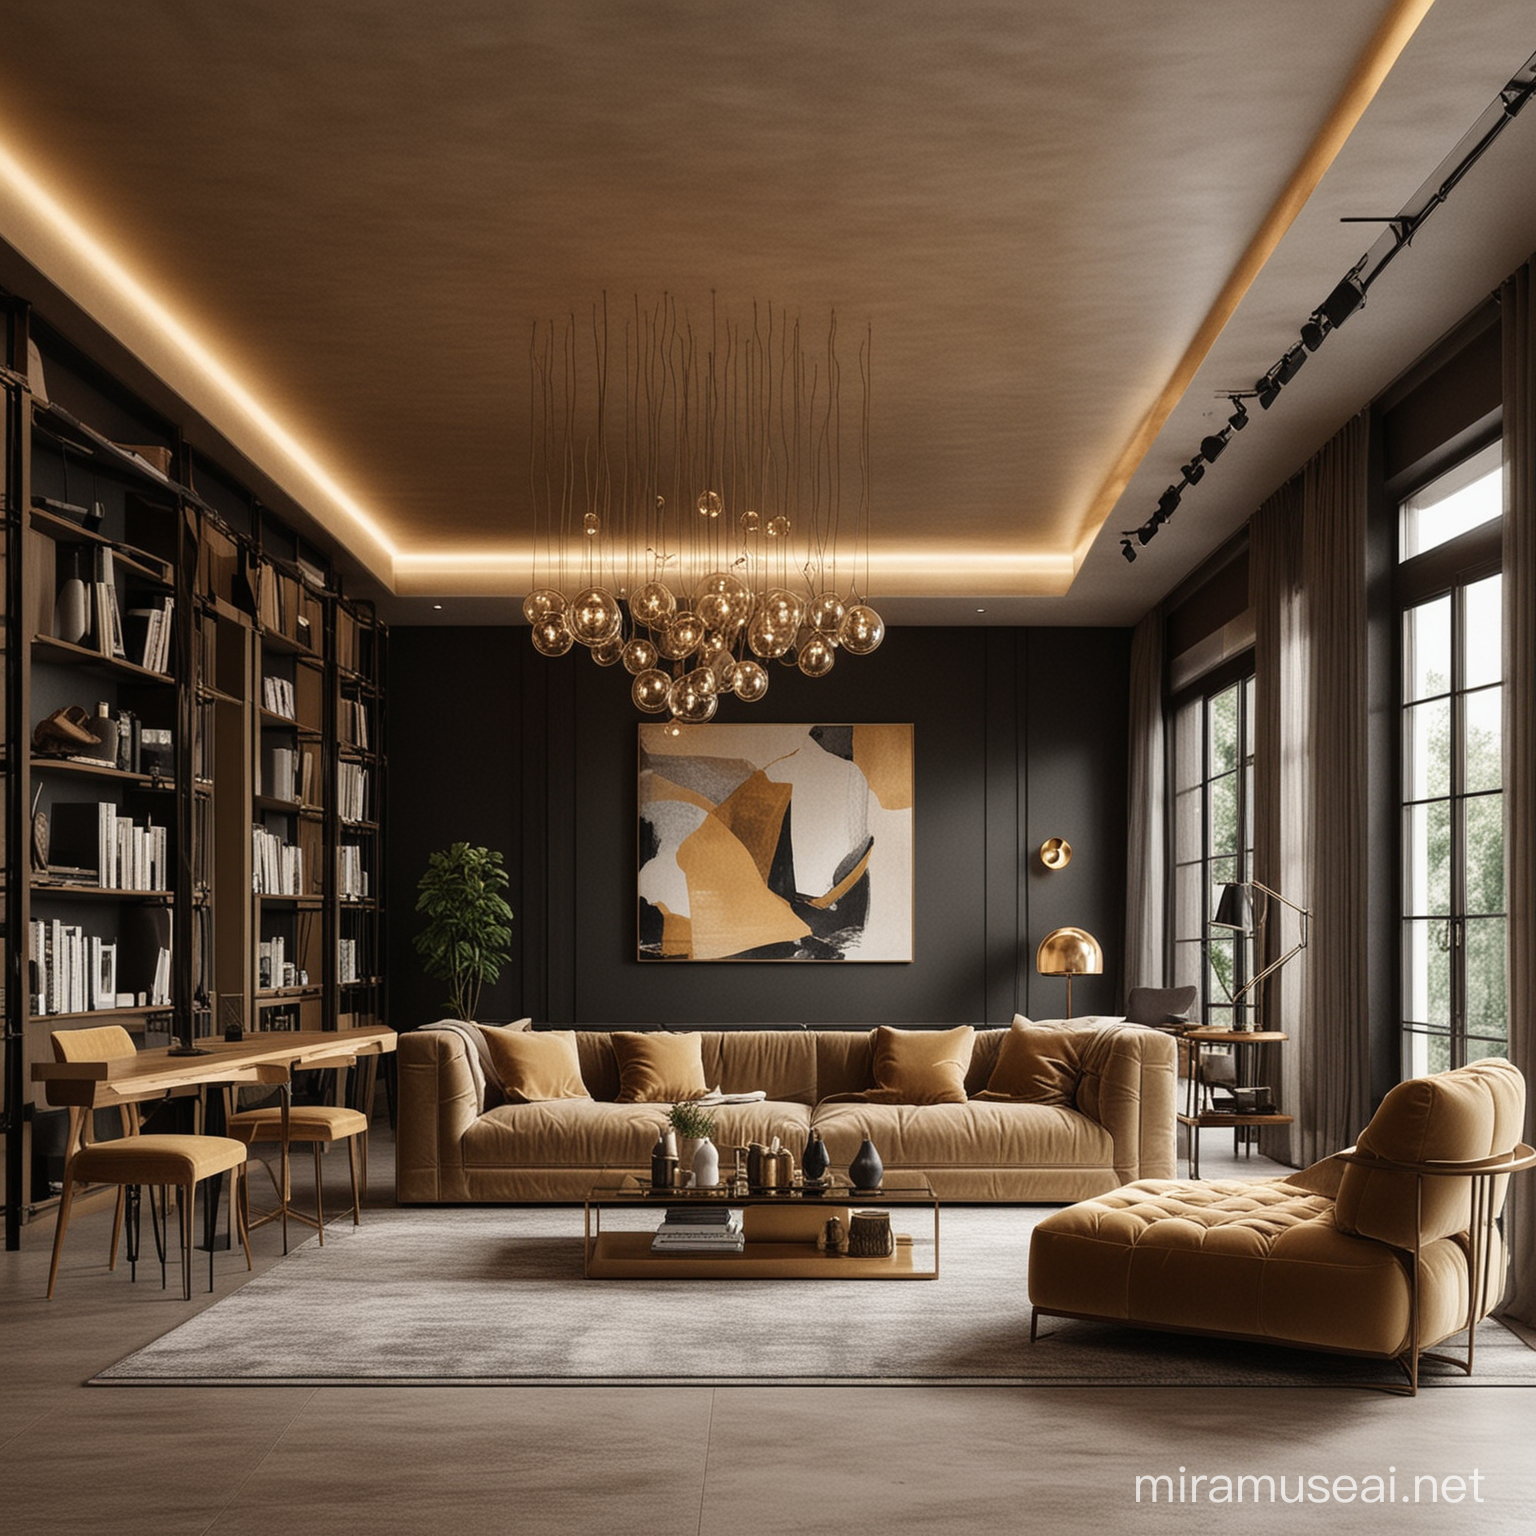 Futuristic Architectural Interior Design with Black Khaki and Gold Palette